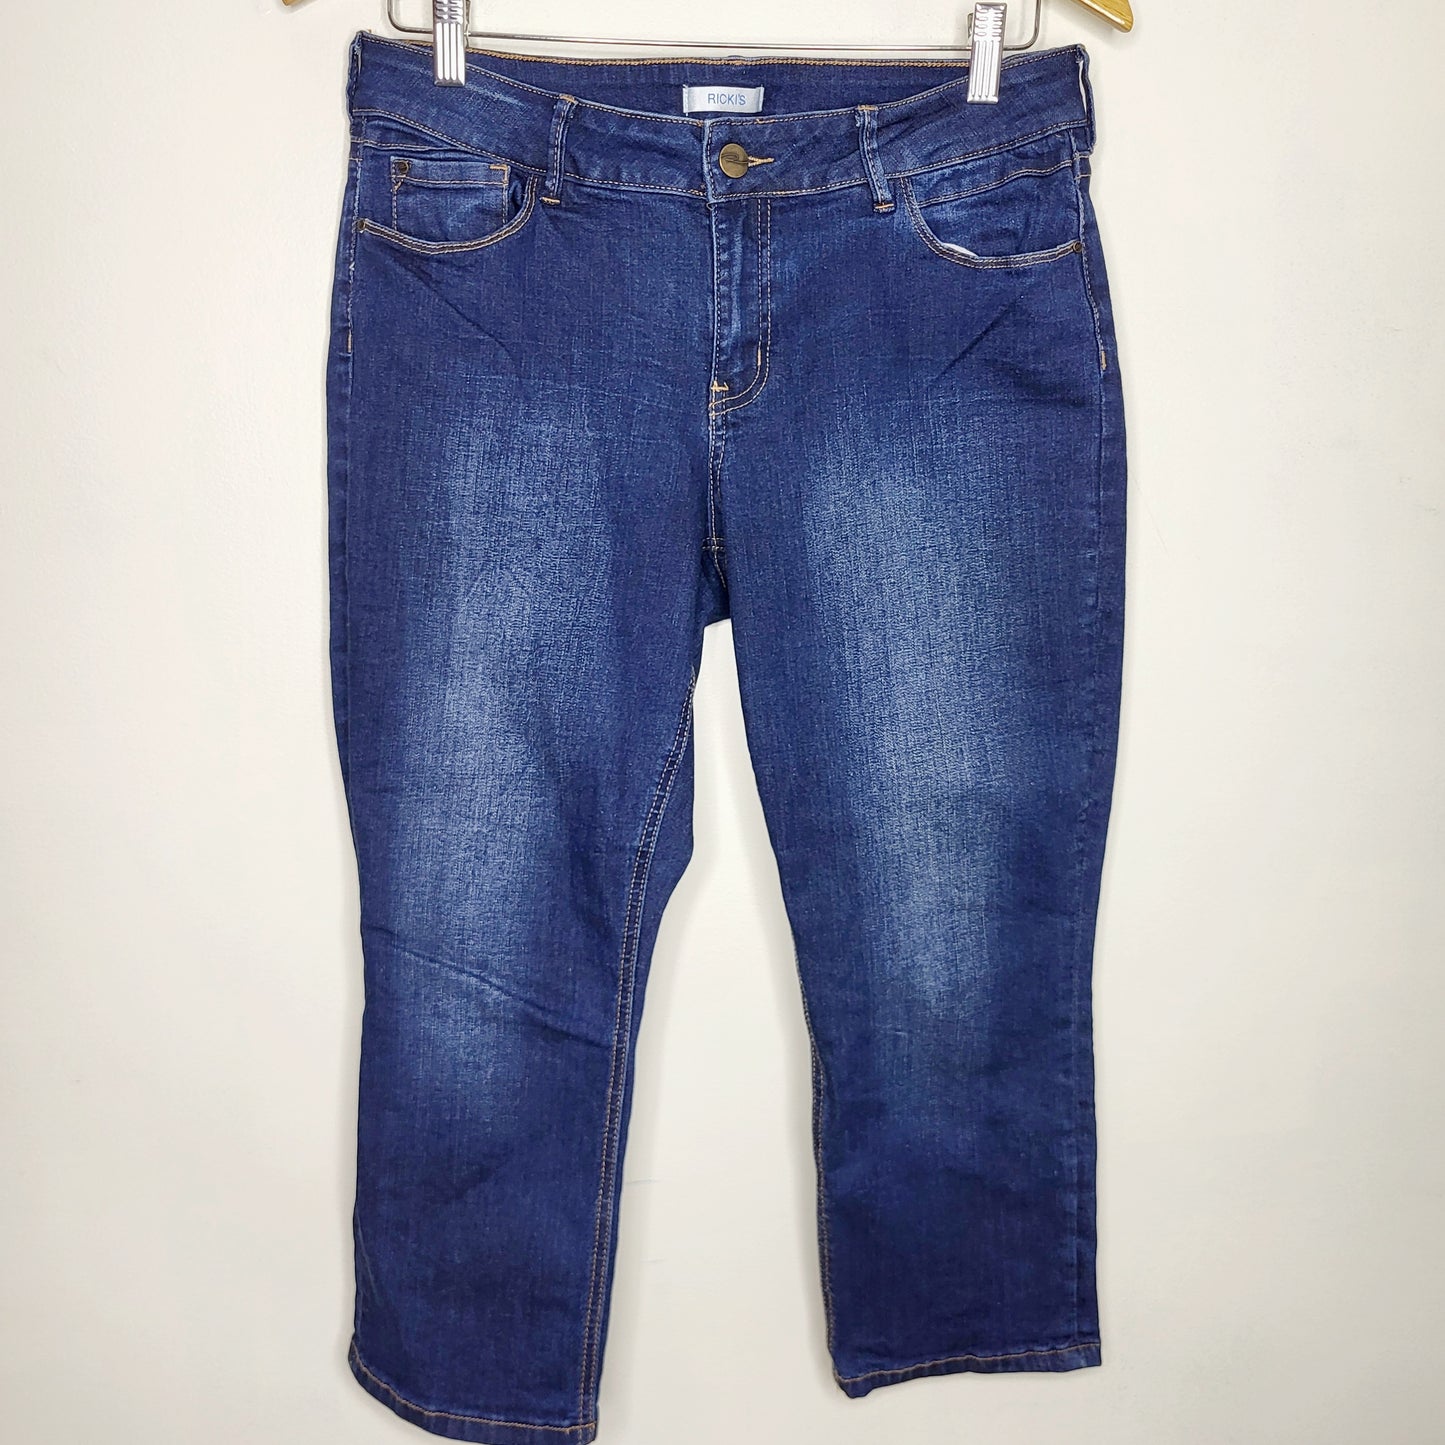 RVOS1 - Ricki's capri jeans.  Size 10